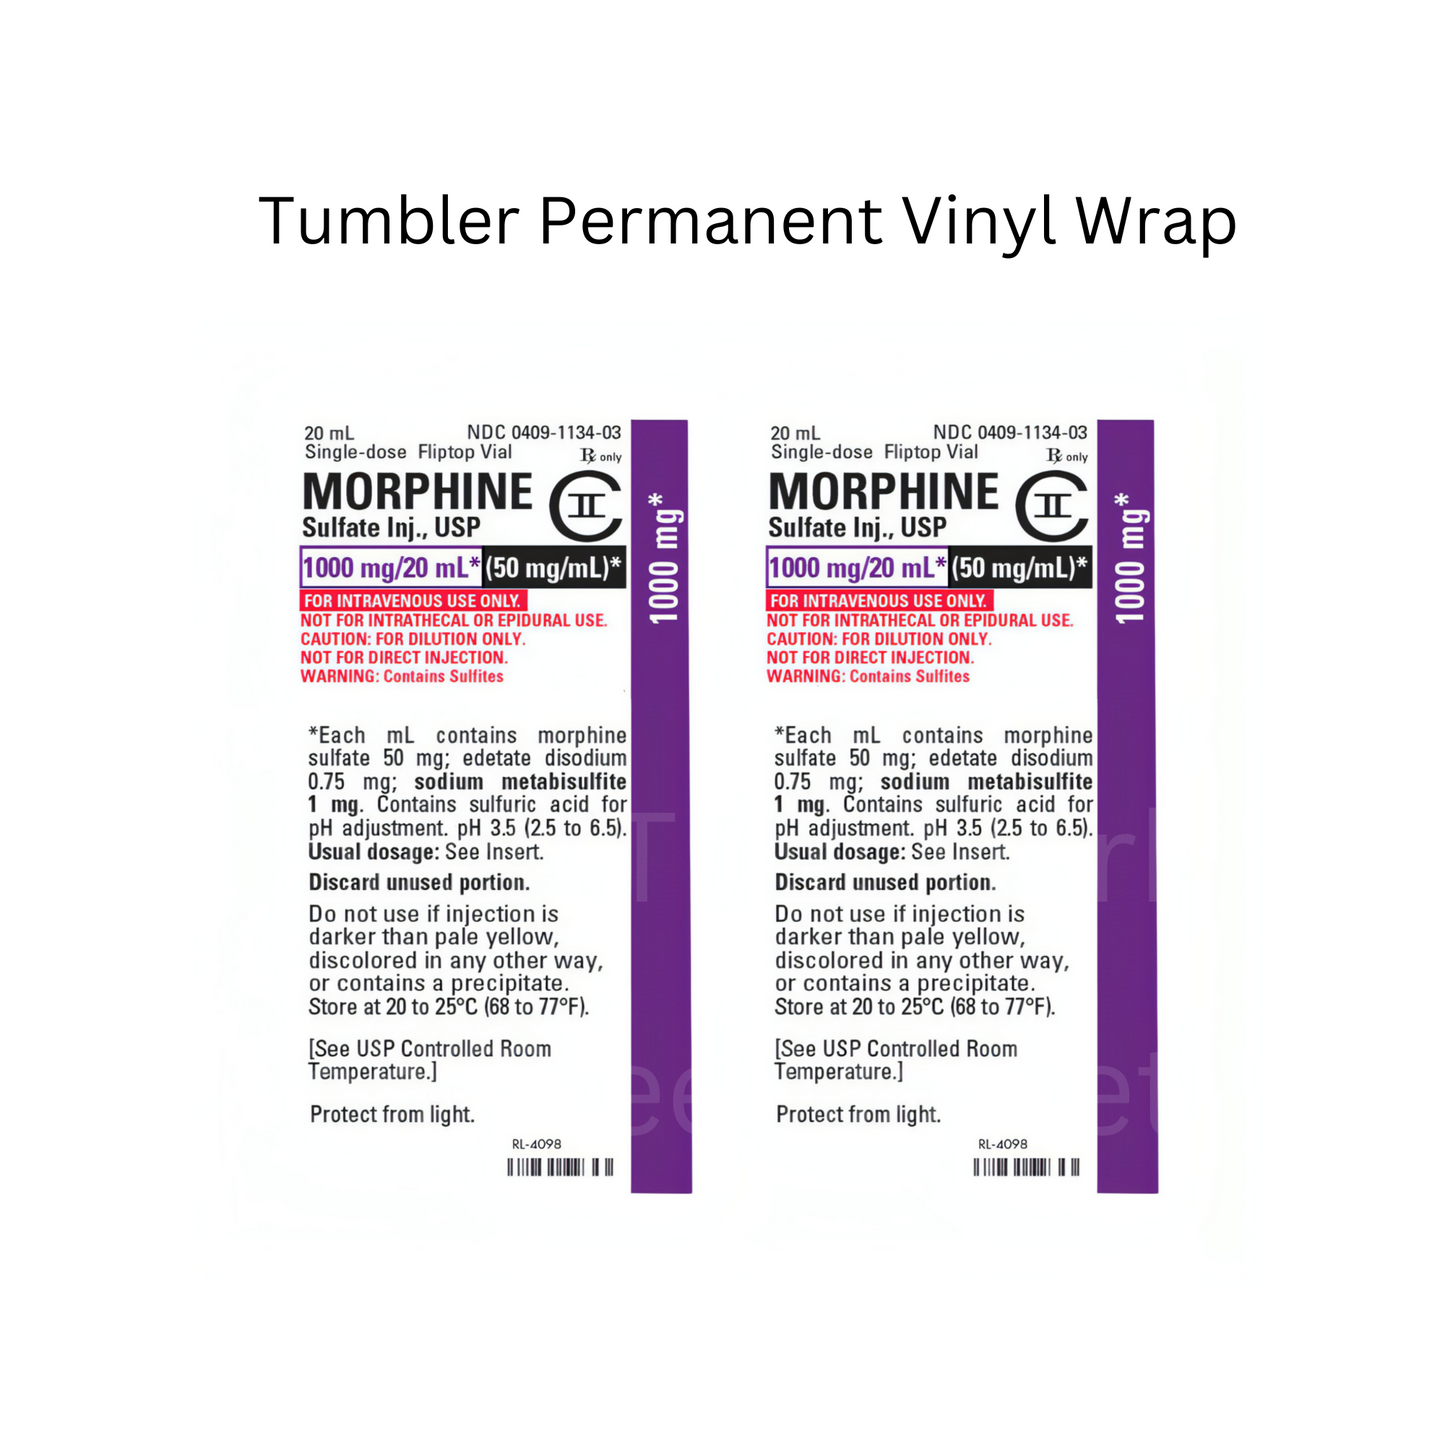 Morphine Permanent Vinyl Wrap